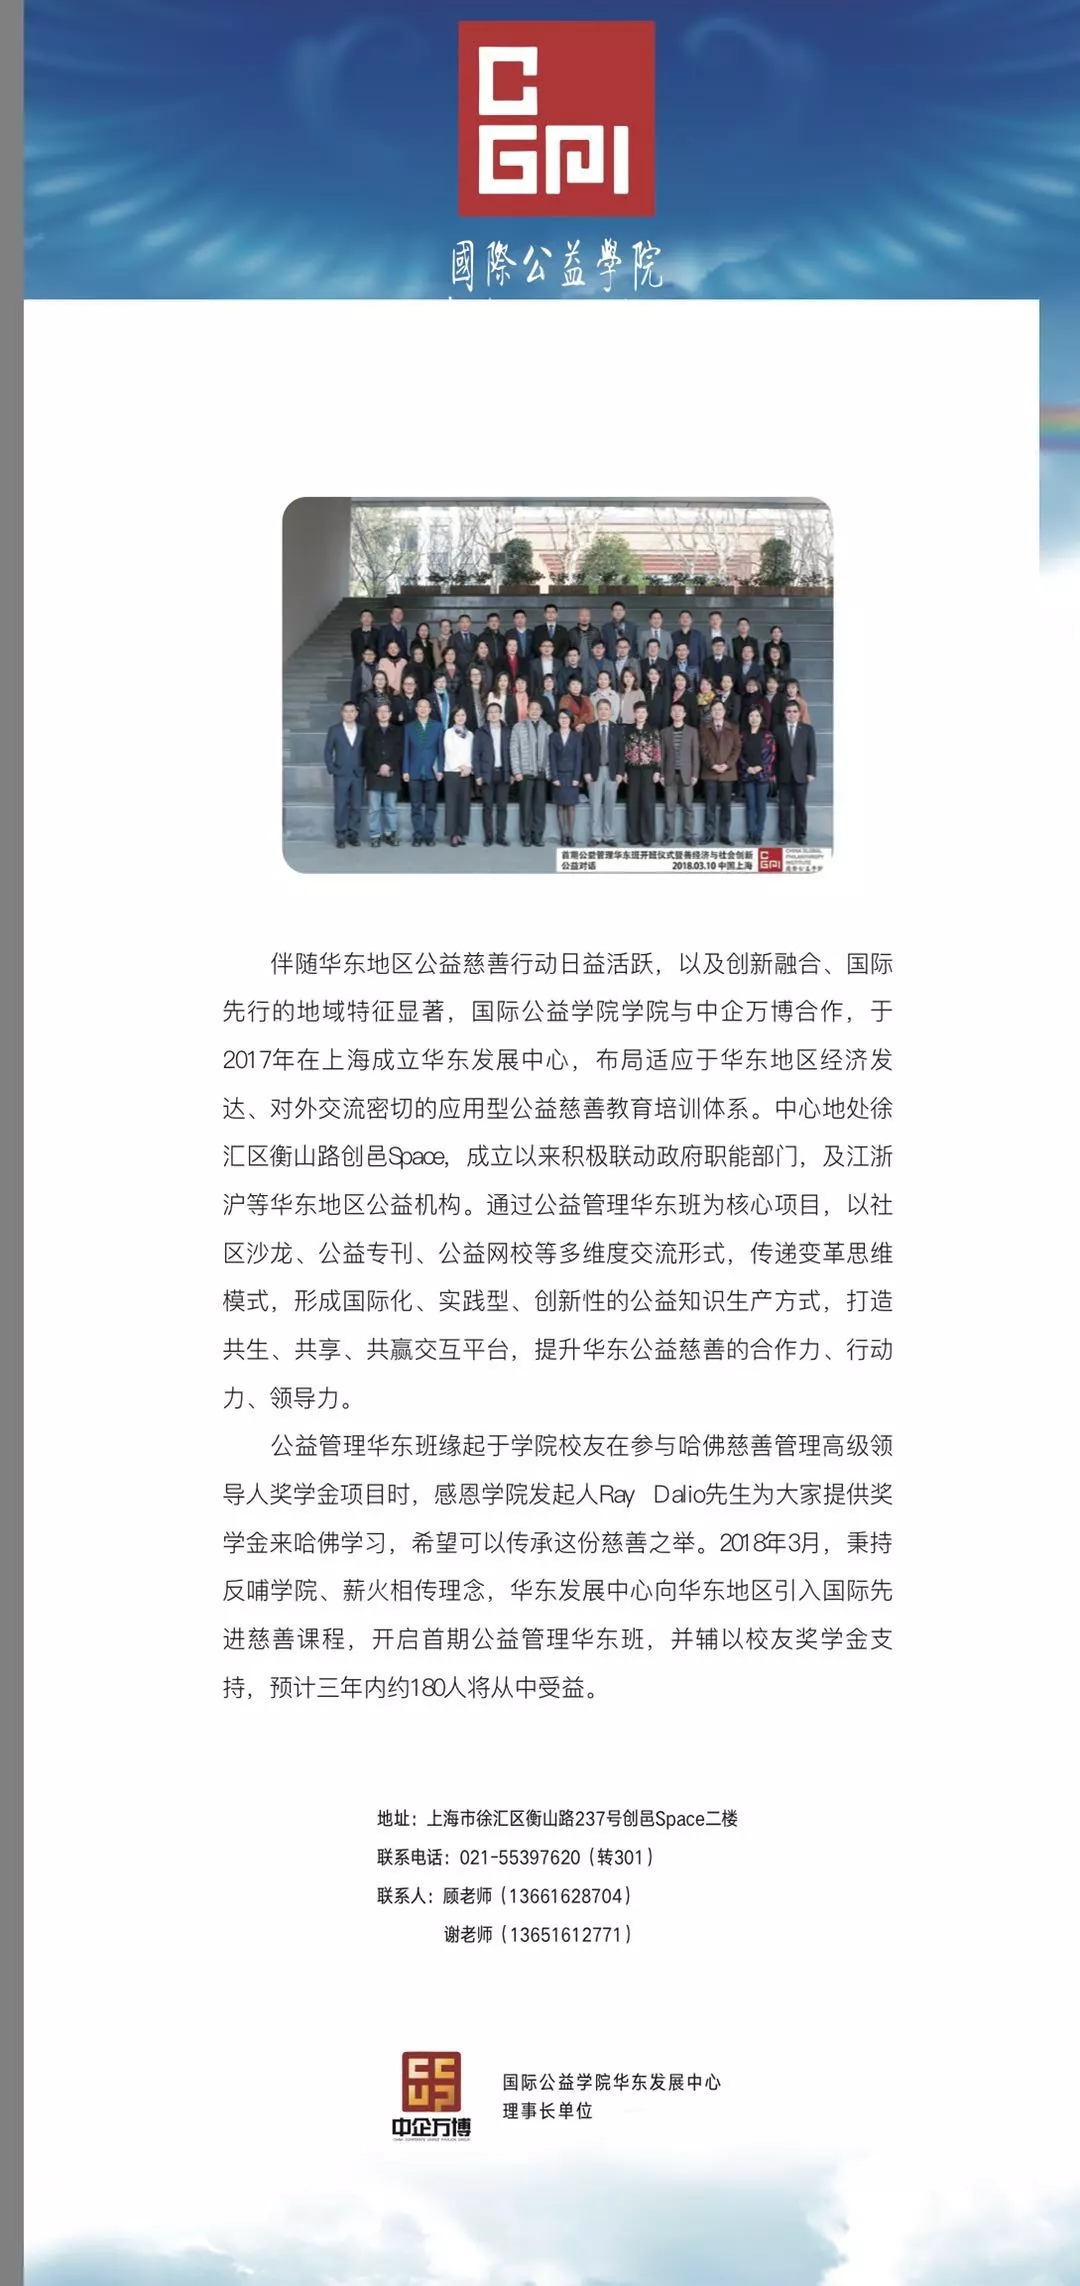 2018年上海慈善论坛隆重举行